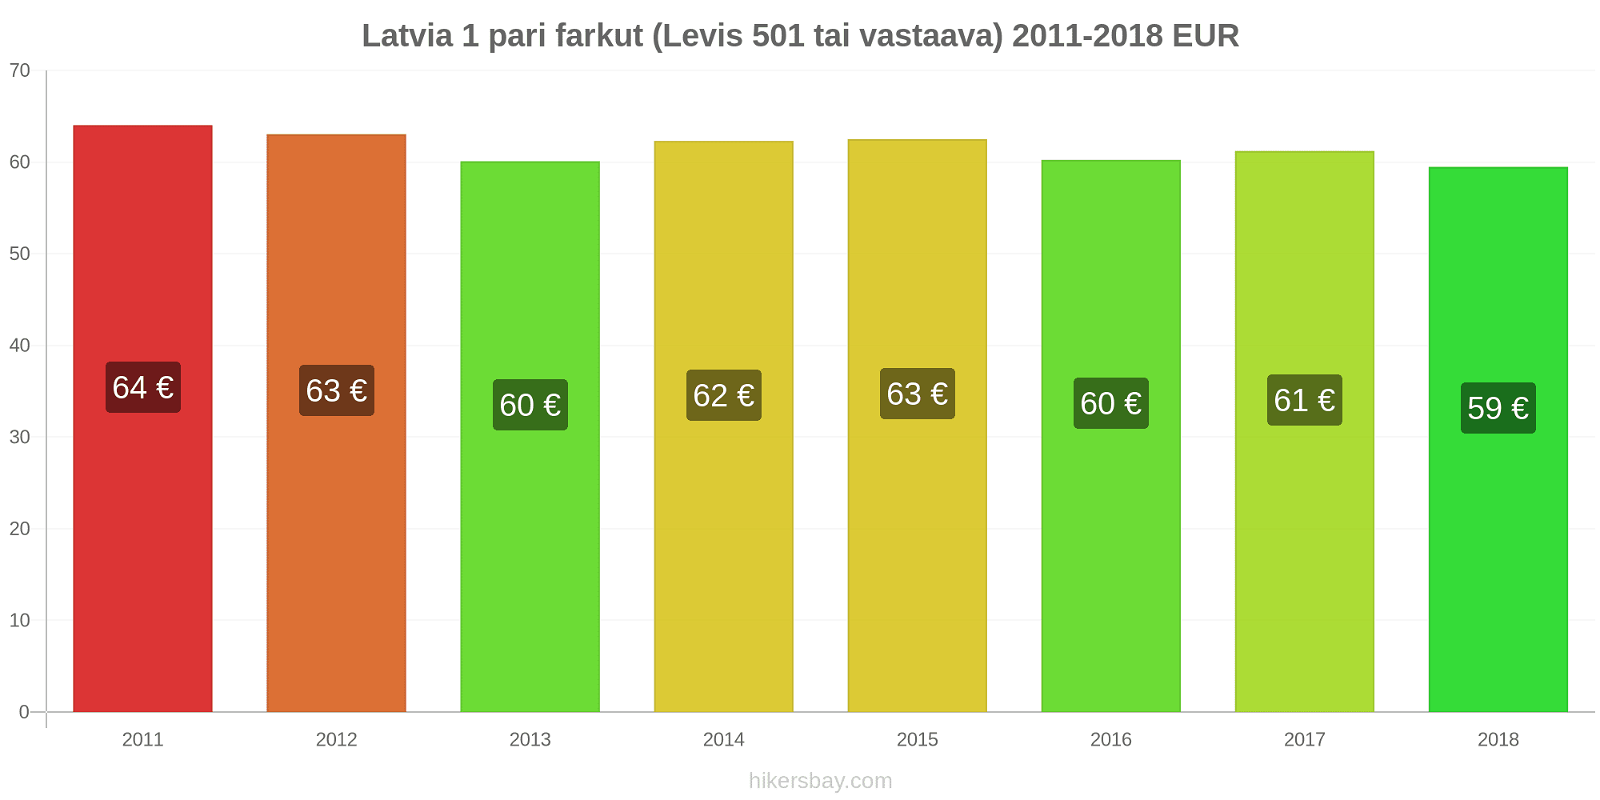 Latvia hintojen muutokset 1 pari farkut (Levis 501 tai vastaava) hikersbay.com